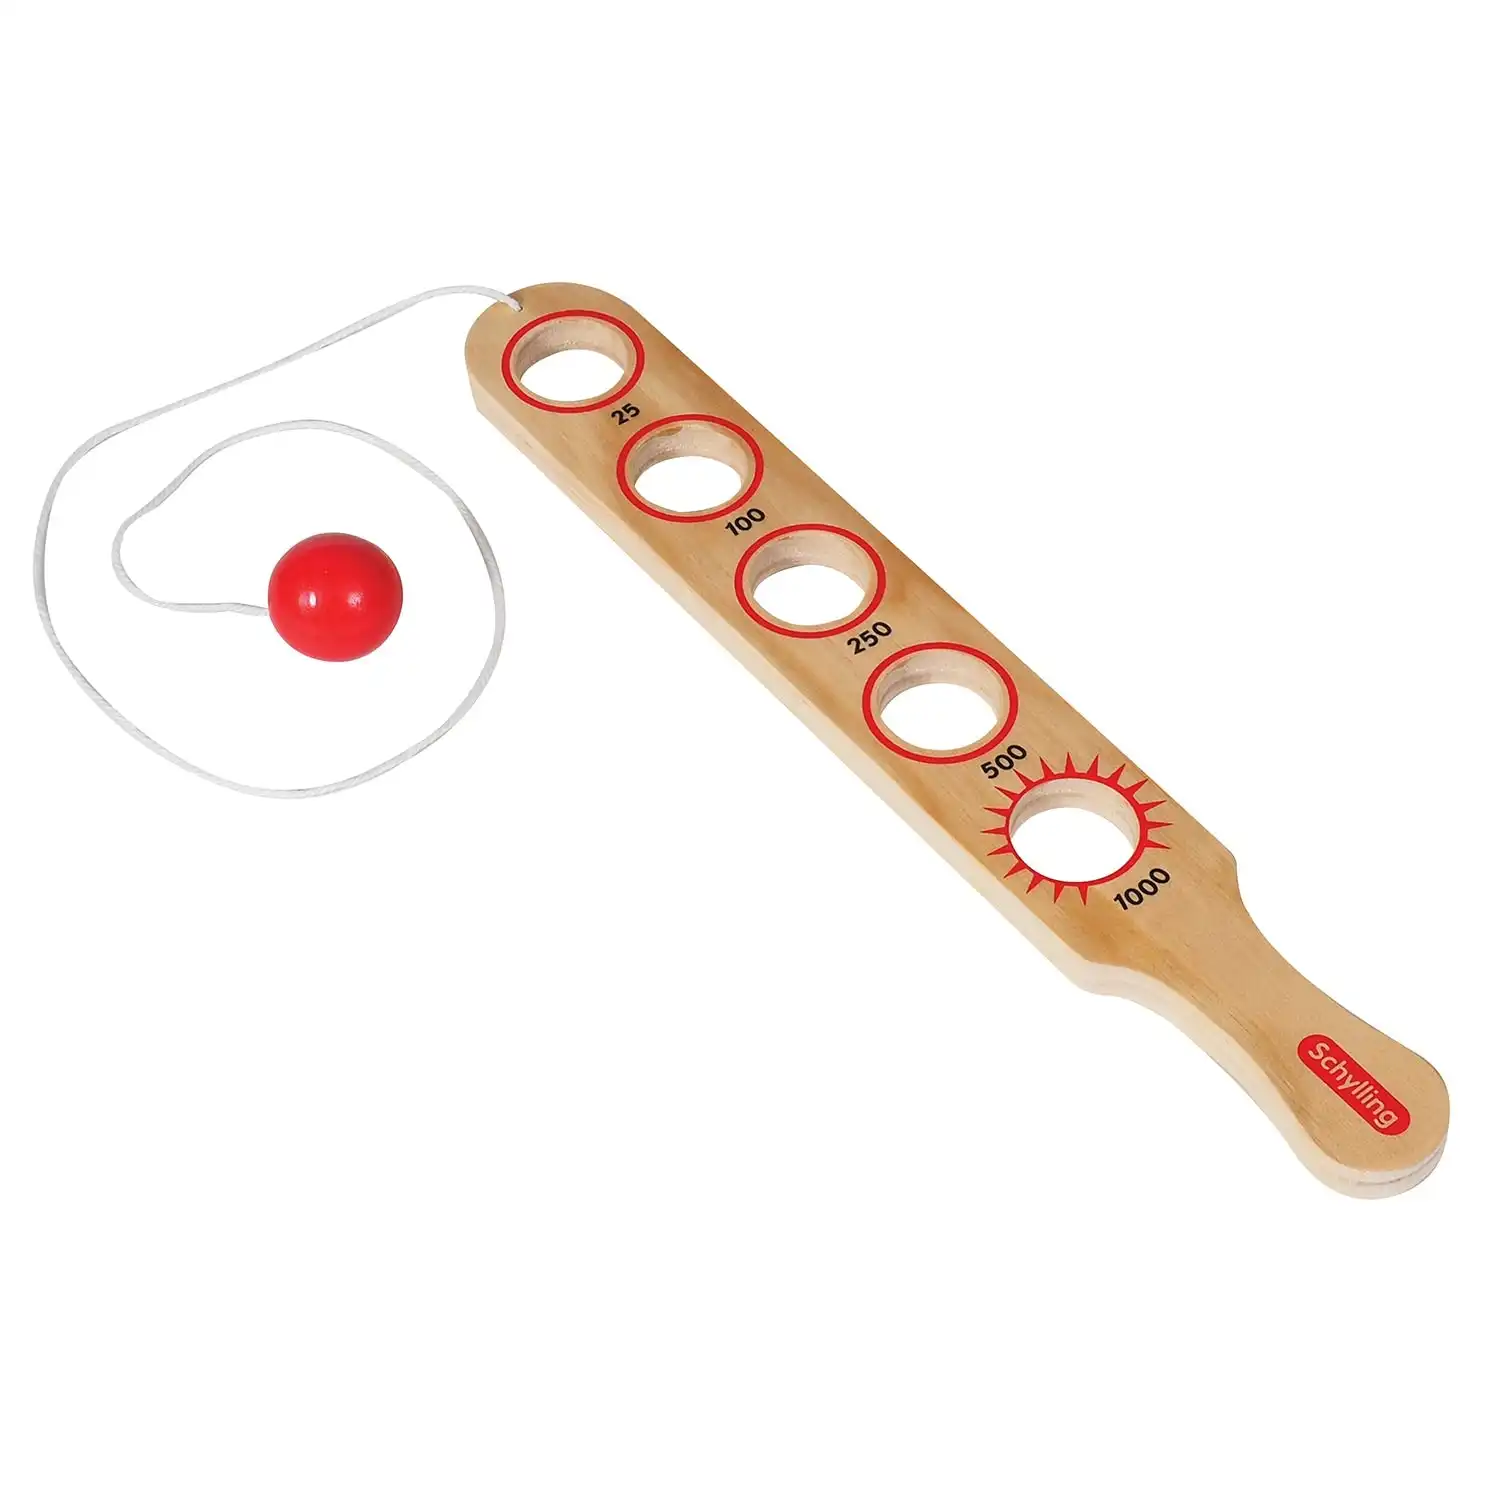 Schylling - Flip Stick Game